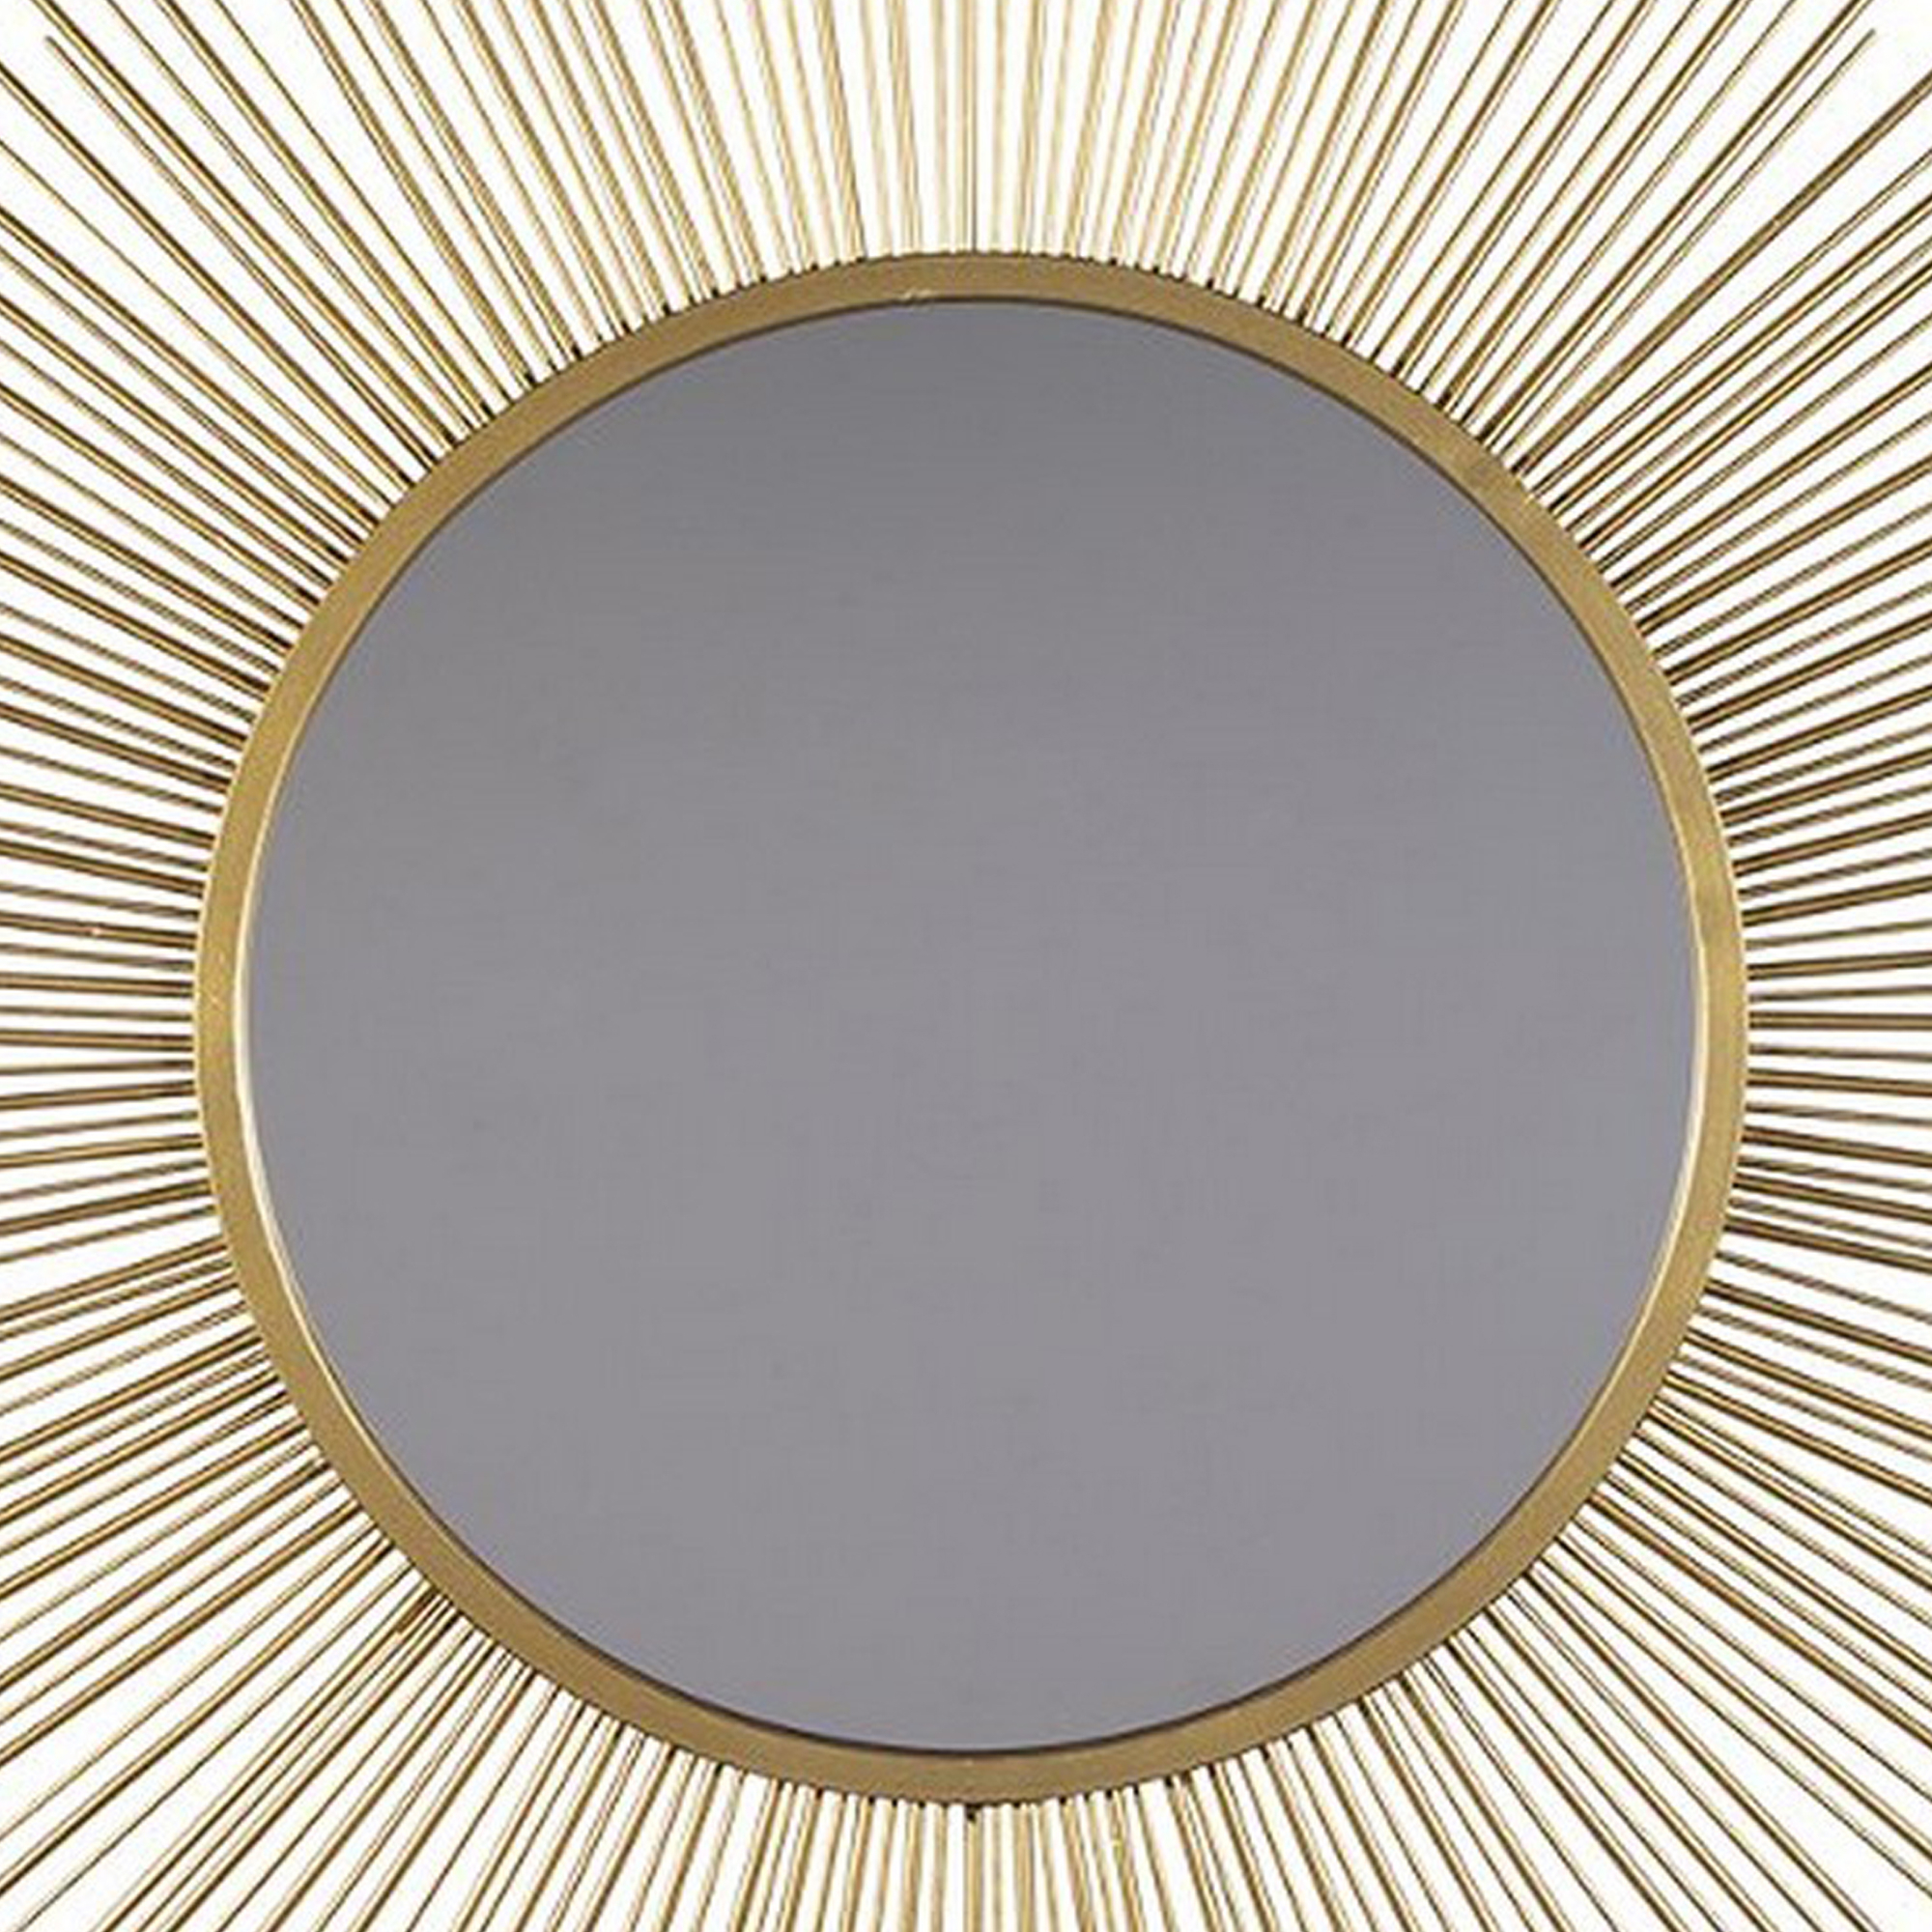 Round Accent Mirror With Sunburst Design, Gold And Silver- Saltoro Sherpi